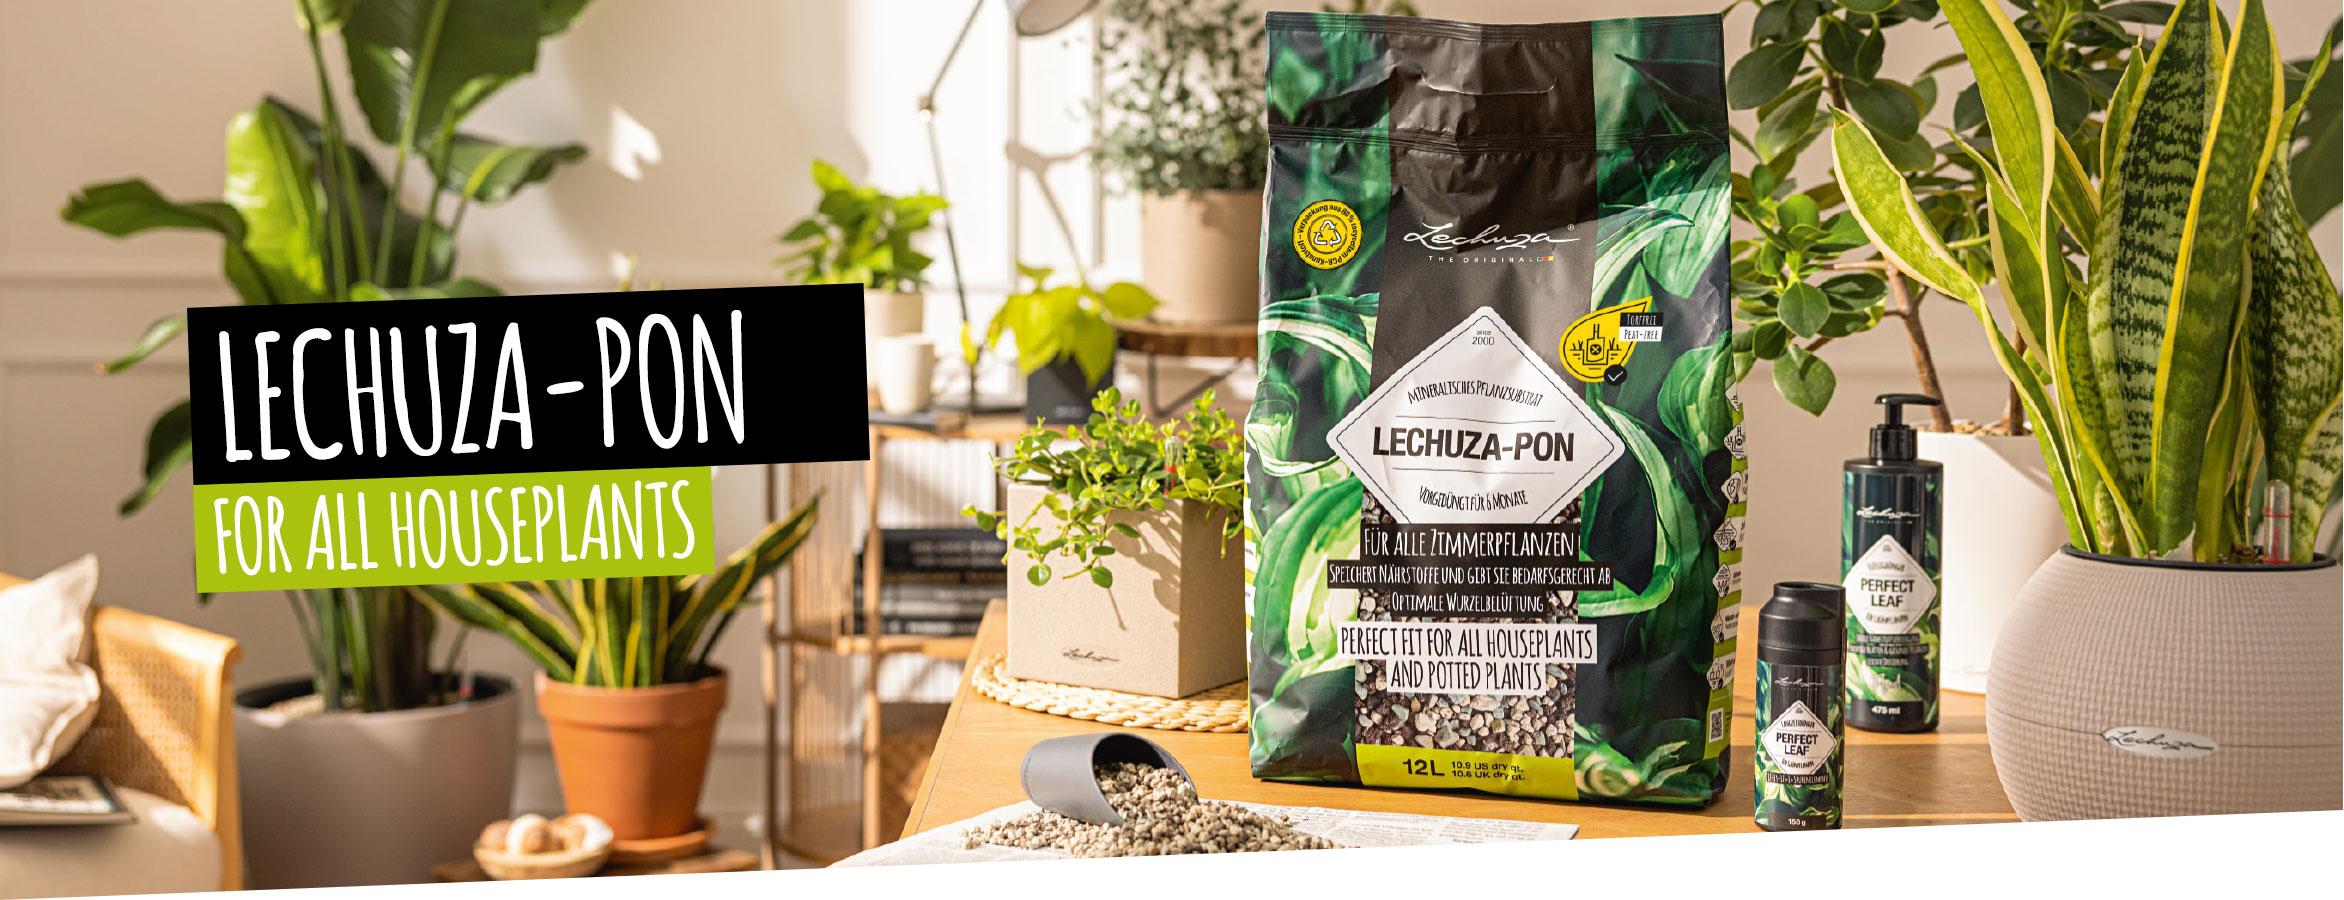 LECHUZA-PON for all houseplants